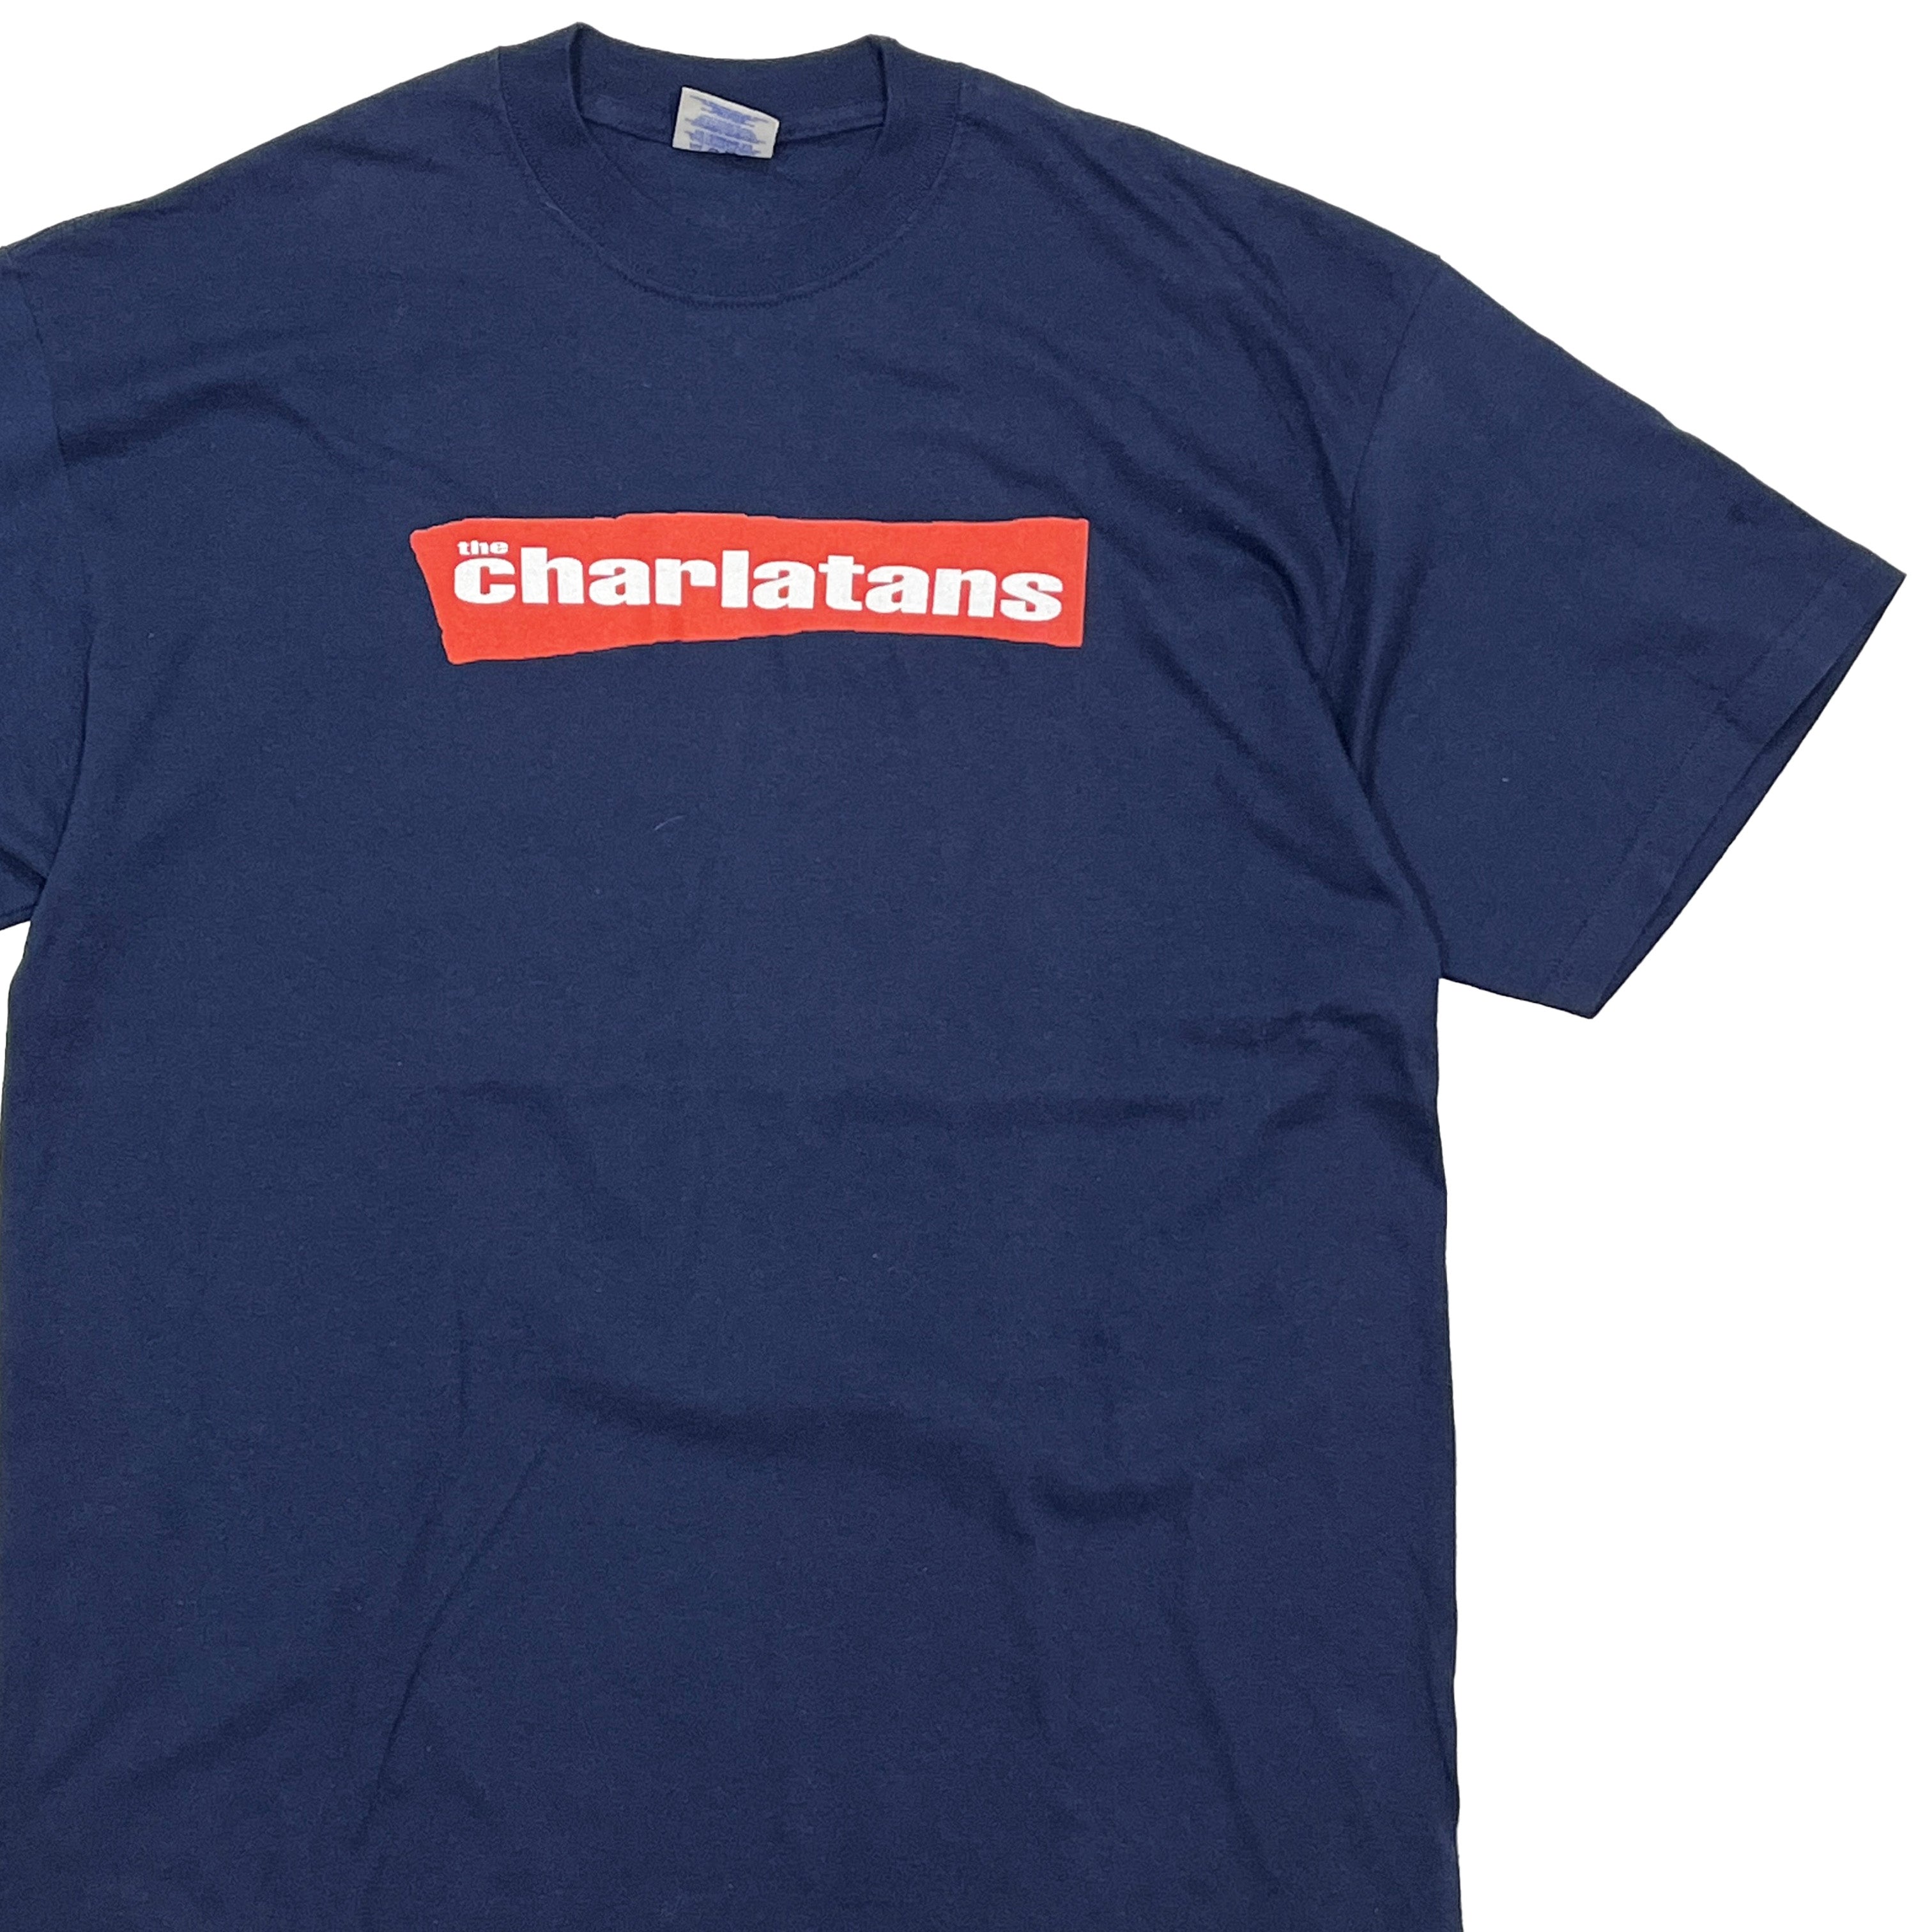 The Charlatans USツアー 2002年 Tシャツ